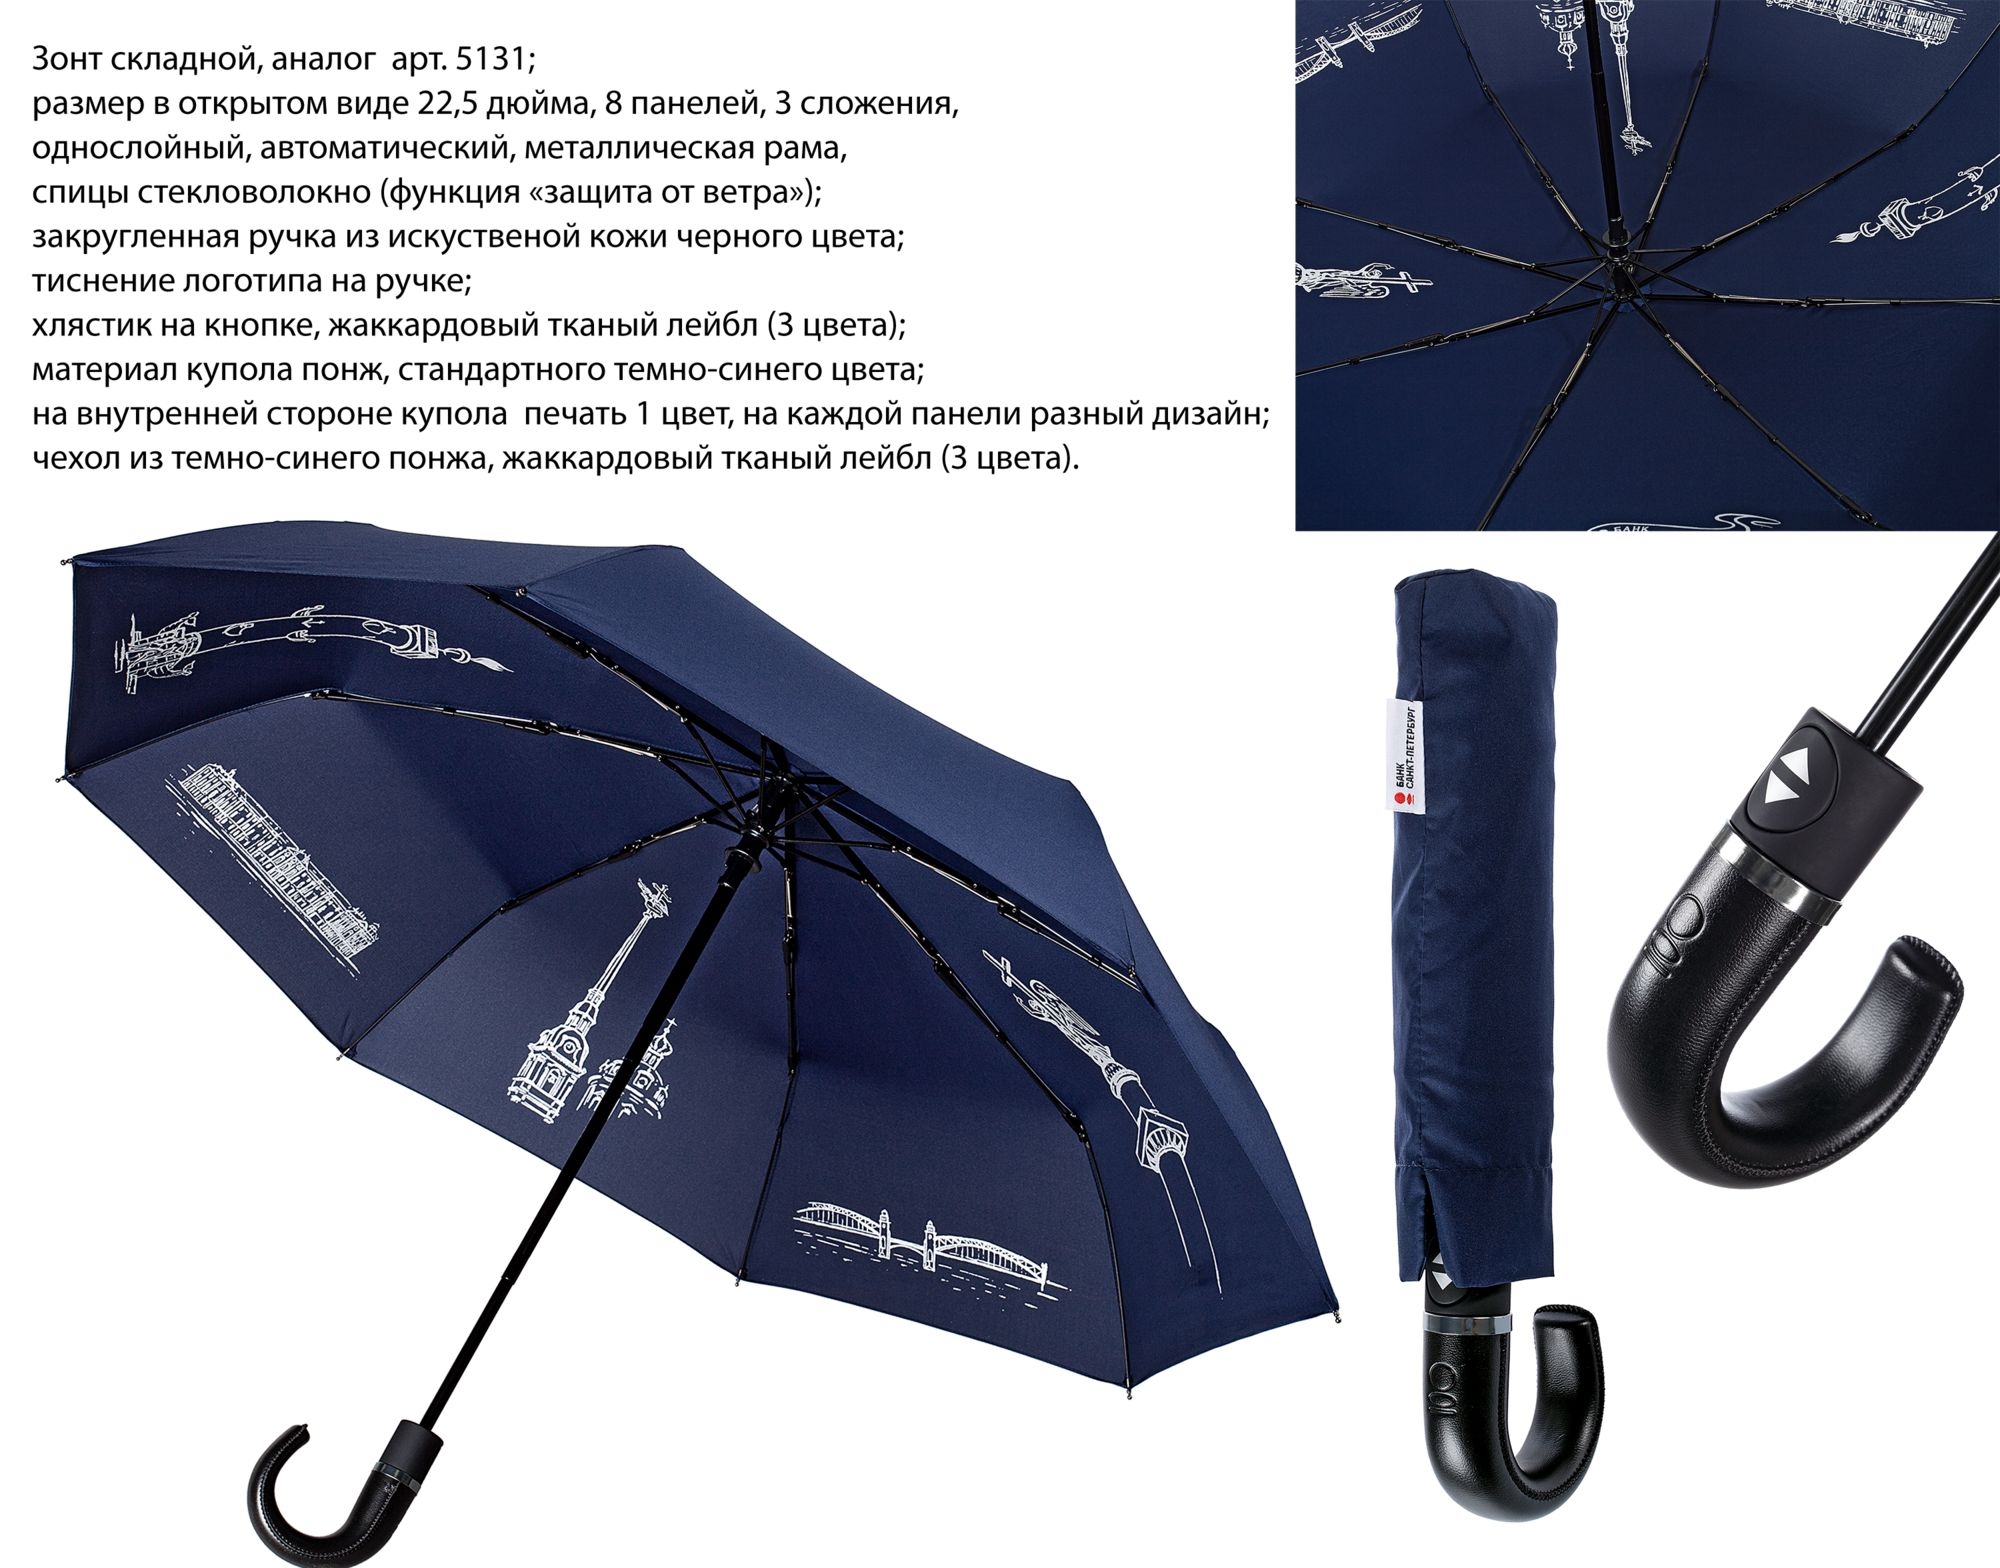 Зонт складной на заказ, купол – полиэстер / понж; ручка – дерево / пластик / кожа